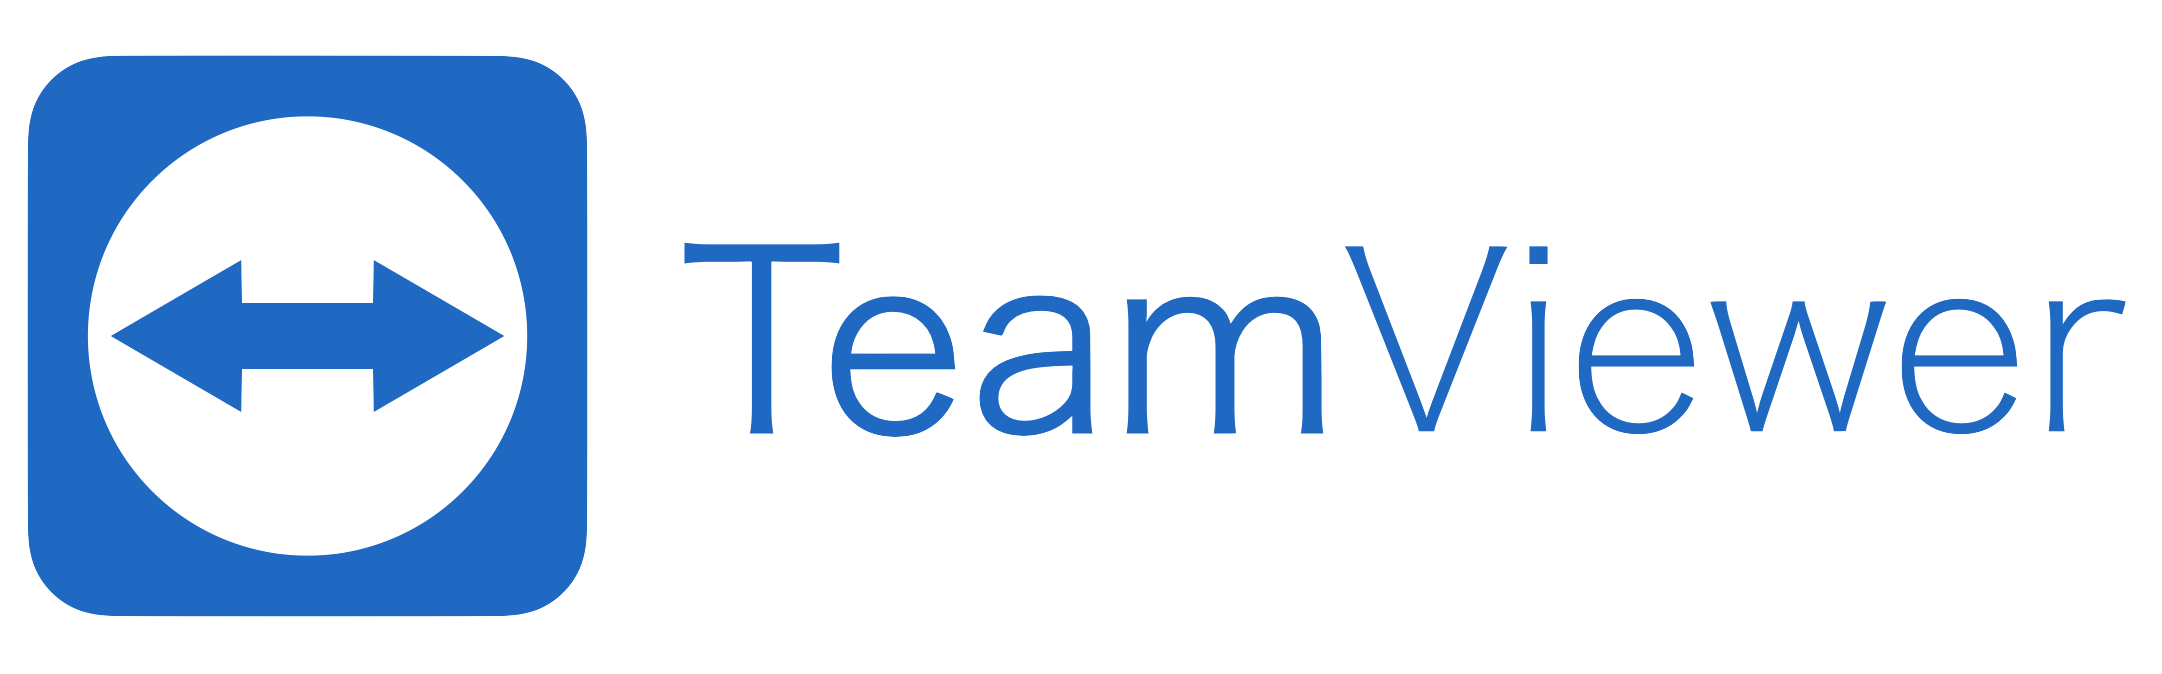 TeamViewer-logo.png